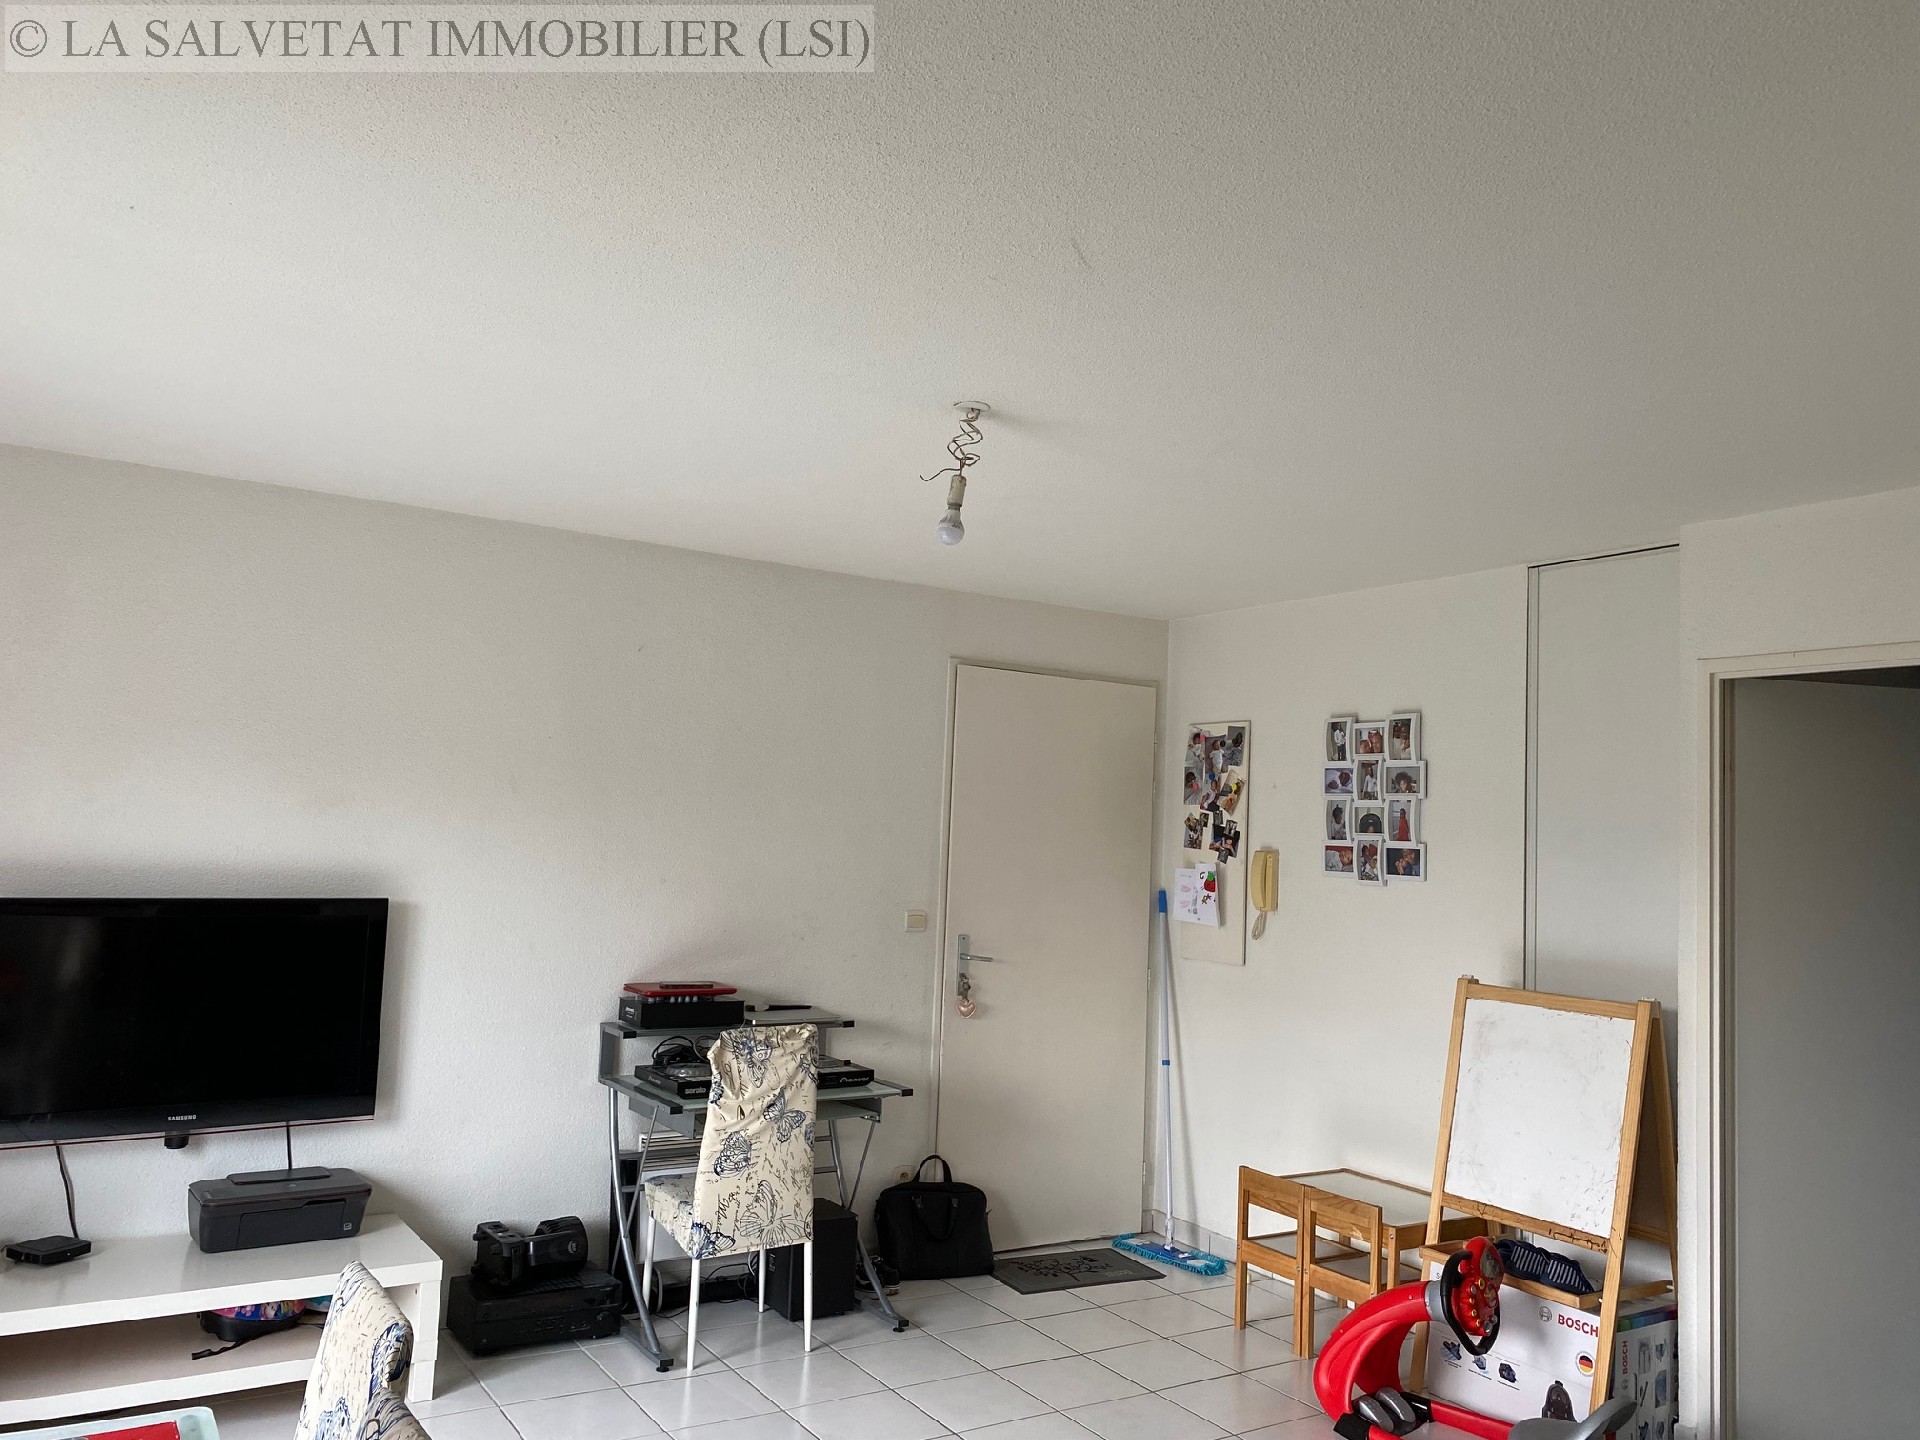 Vente appartement - PLAISANCE DU TOUCH<br>55 m², 3 pièces